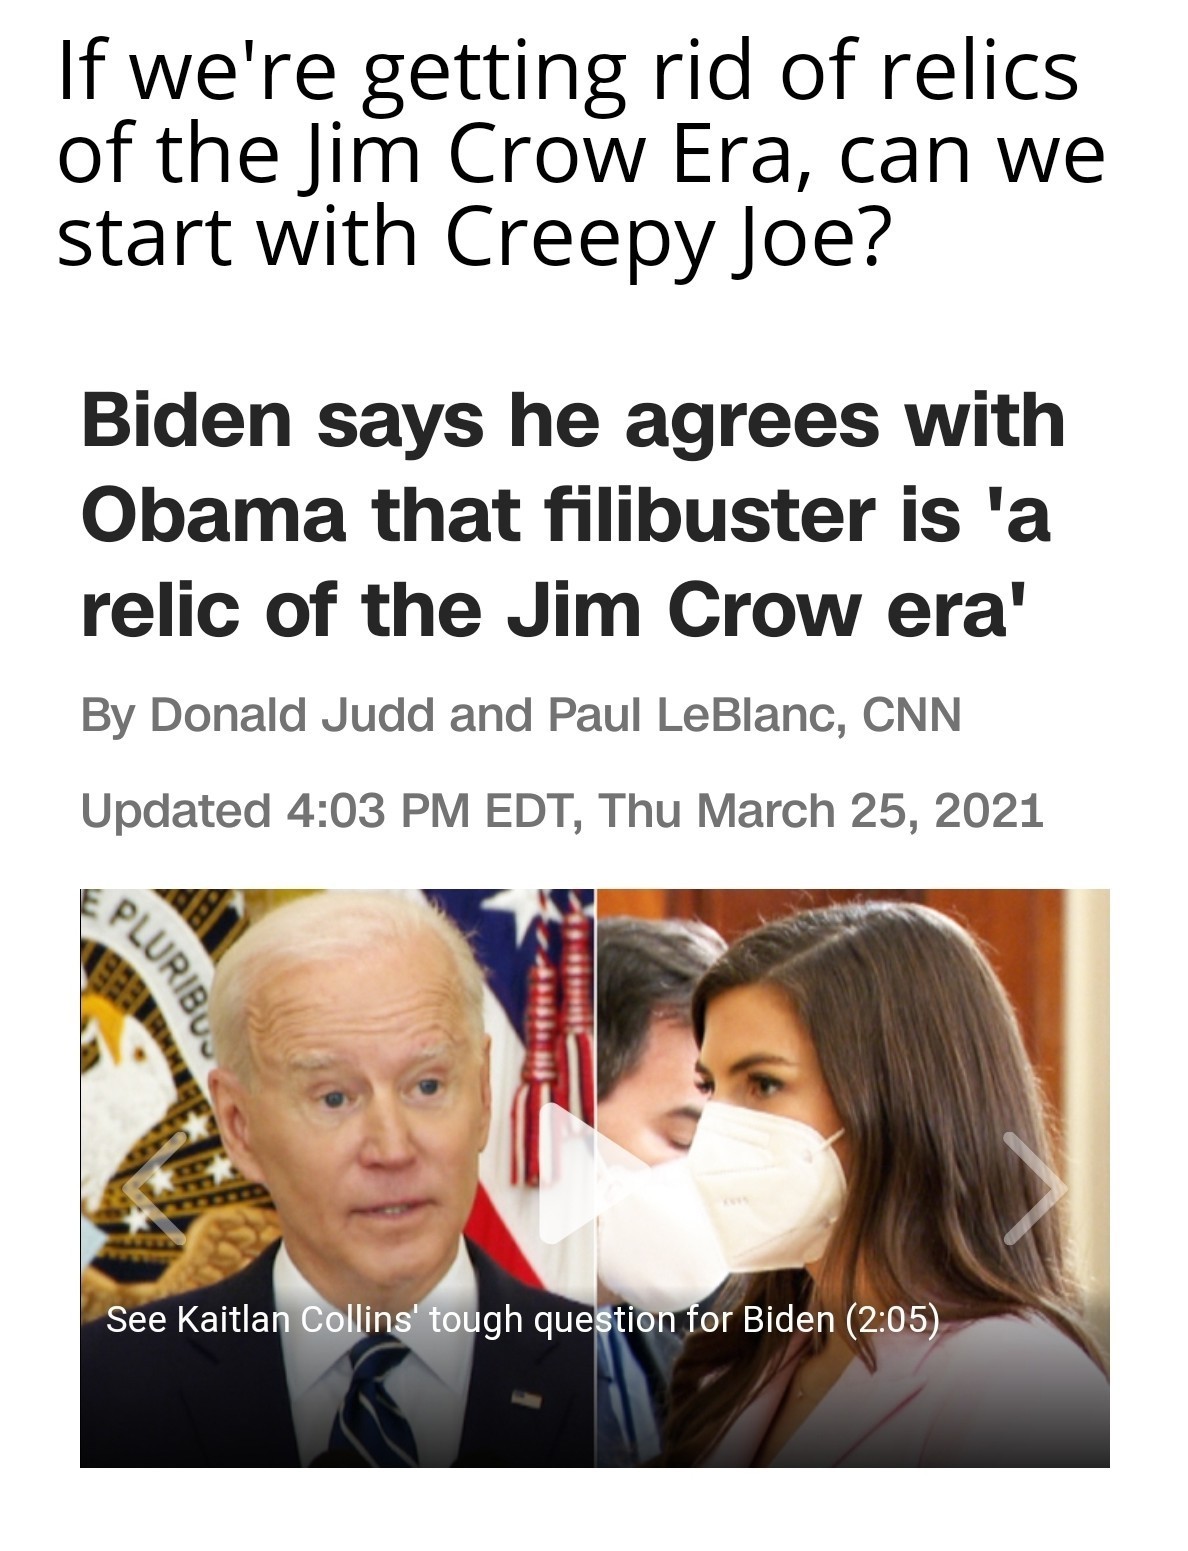 Creepy Joe needs to go into a home! - meme